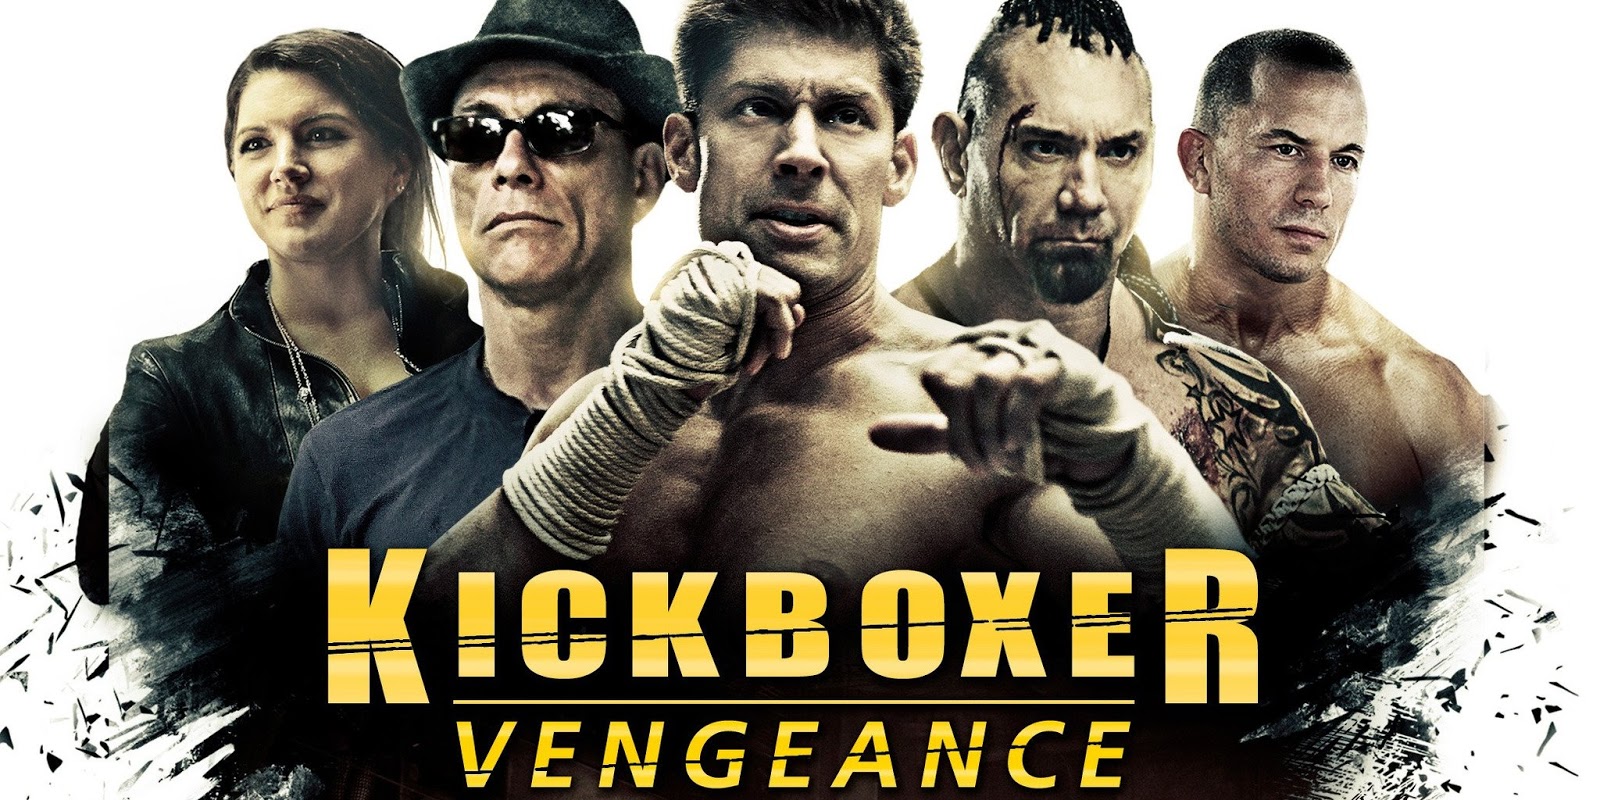 Kickboxer Vengeance Full Movie Download